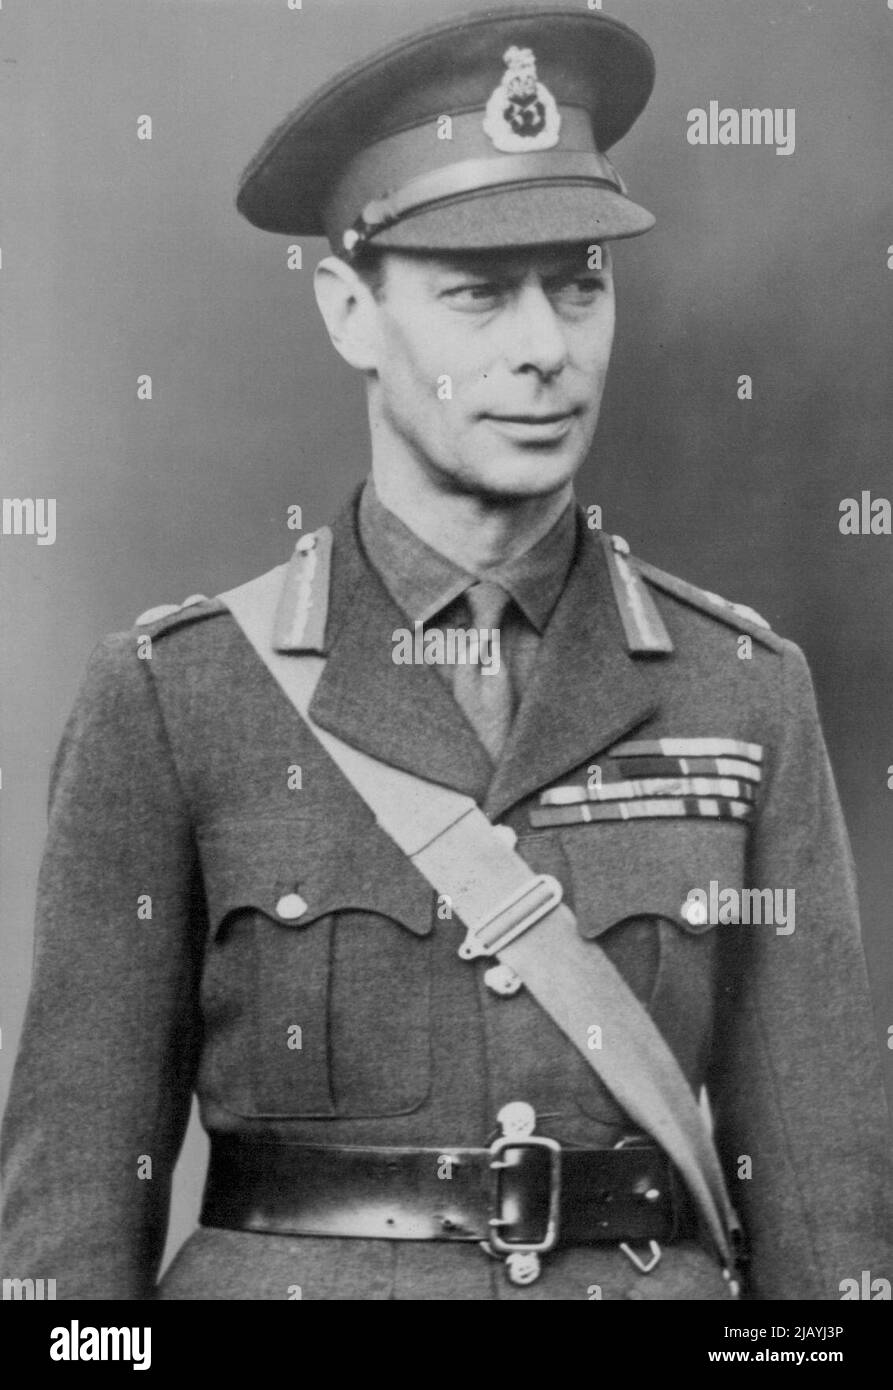 Das jüngste Porträt seiner Majestät König Georg VI. In Militäruniform, aufgenommen im Oktober 20. 29. November 1939. Stockfoto